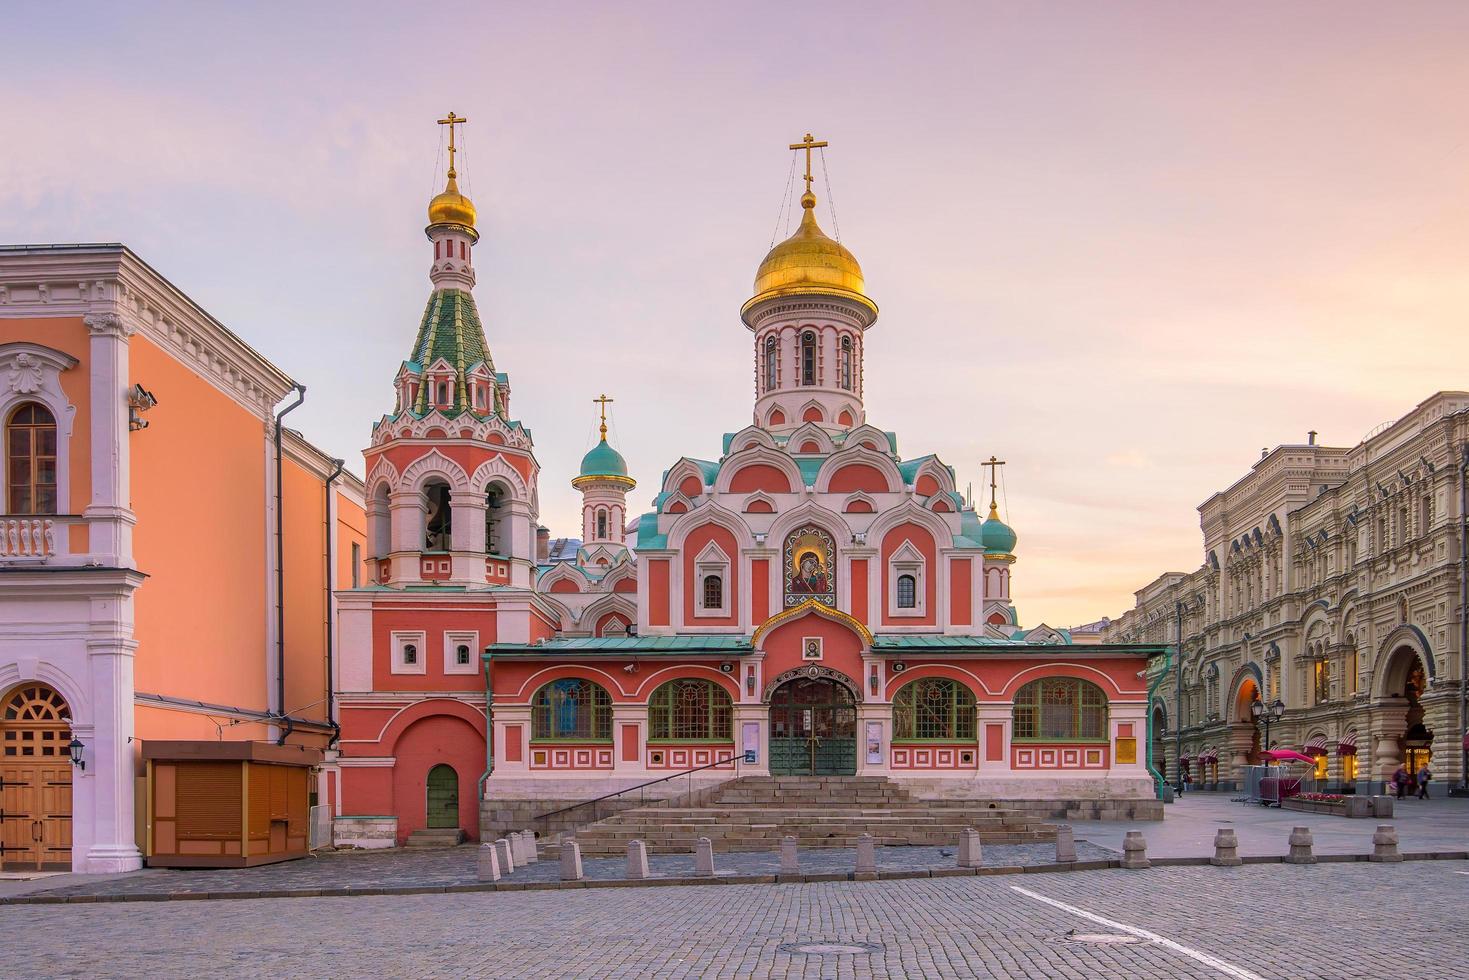 edifícios históricos na praça vermelha em Moscou foto